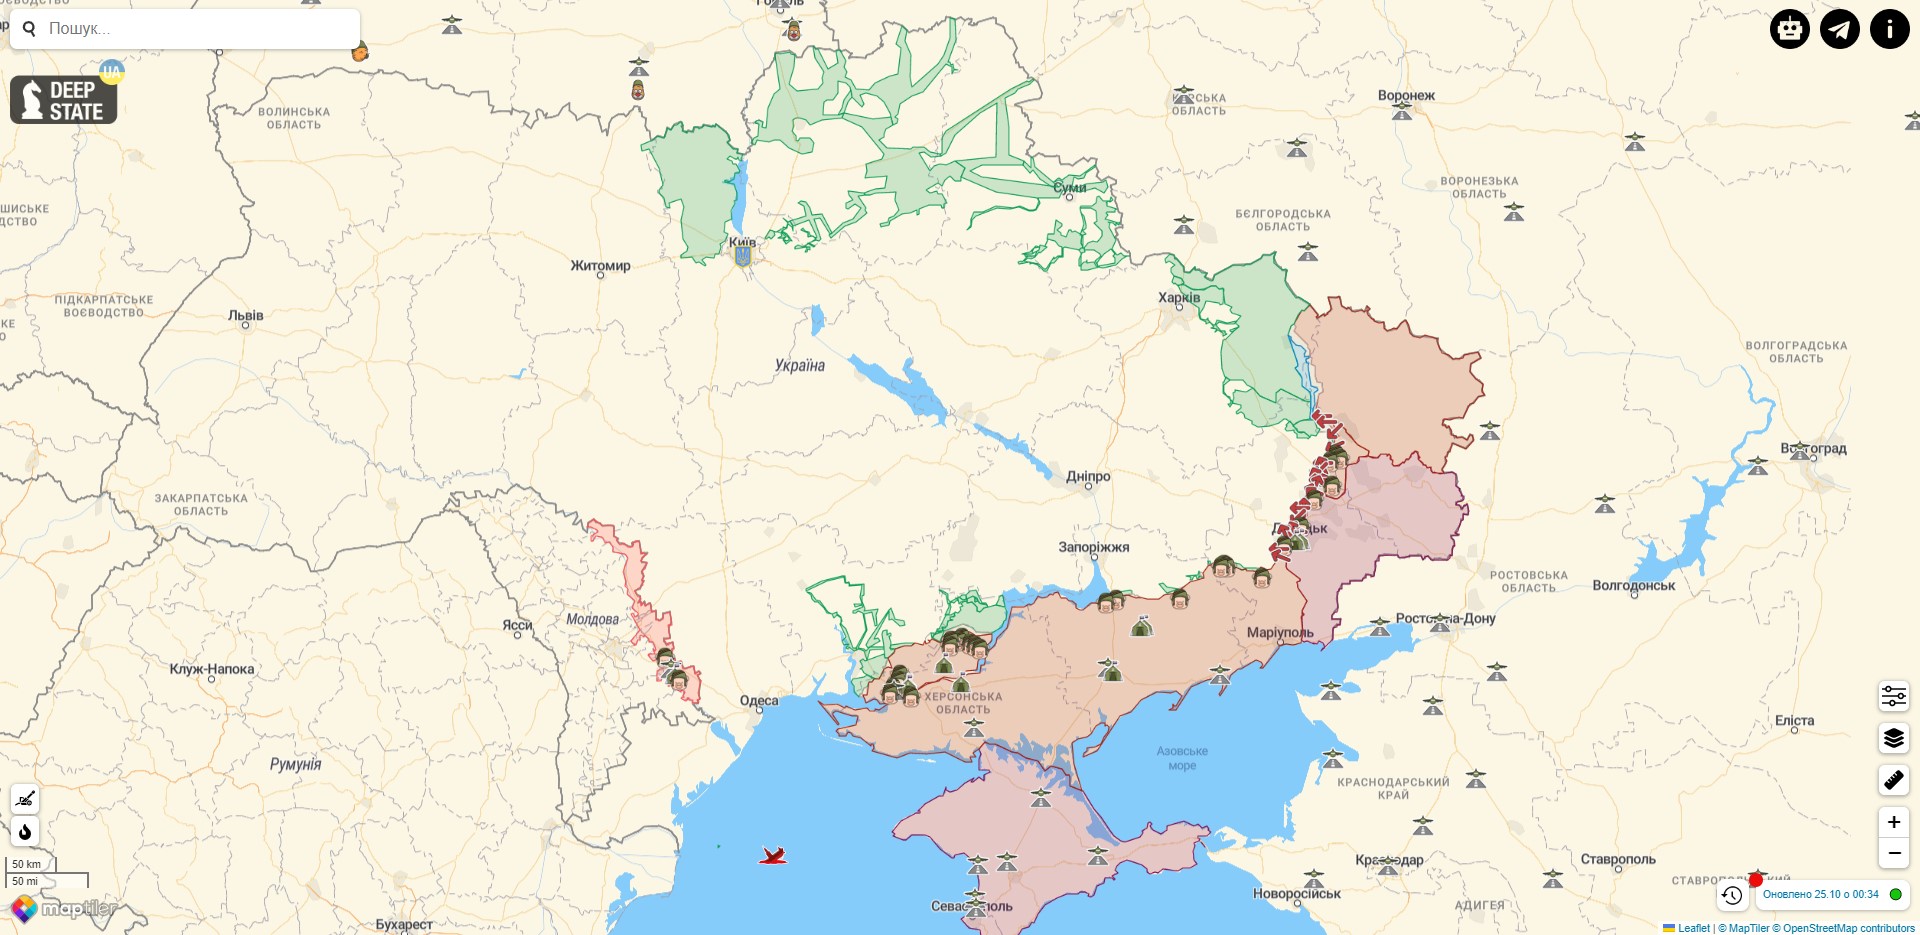 Боевые действия против РФ на территории Украины на 25 октября